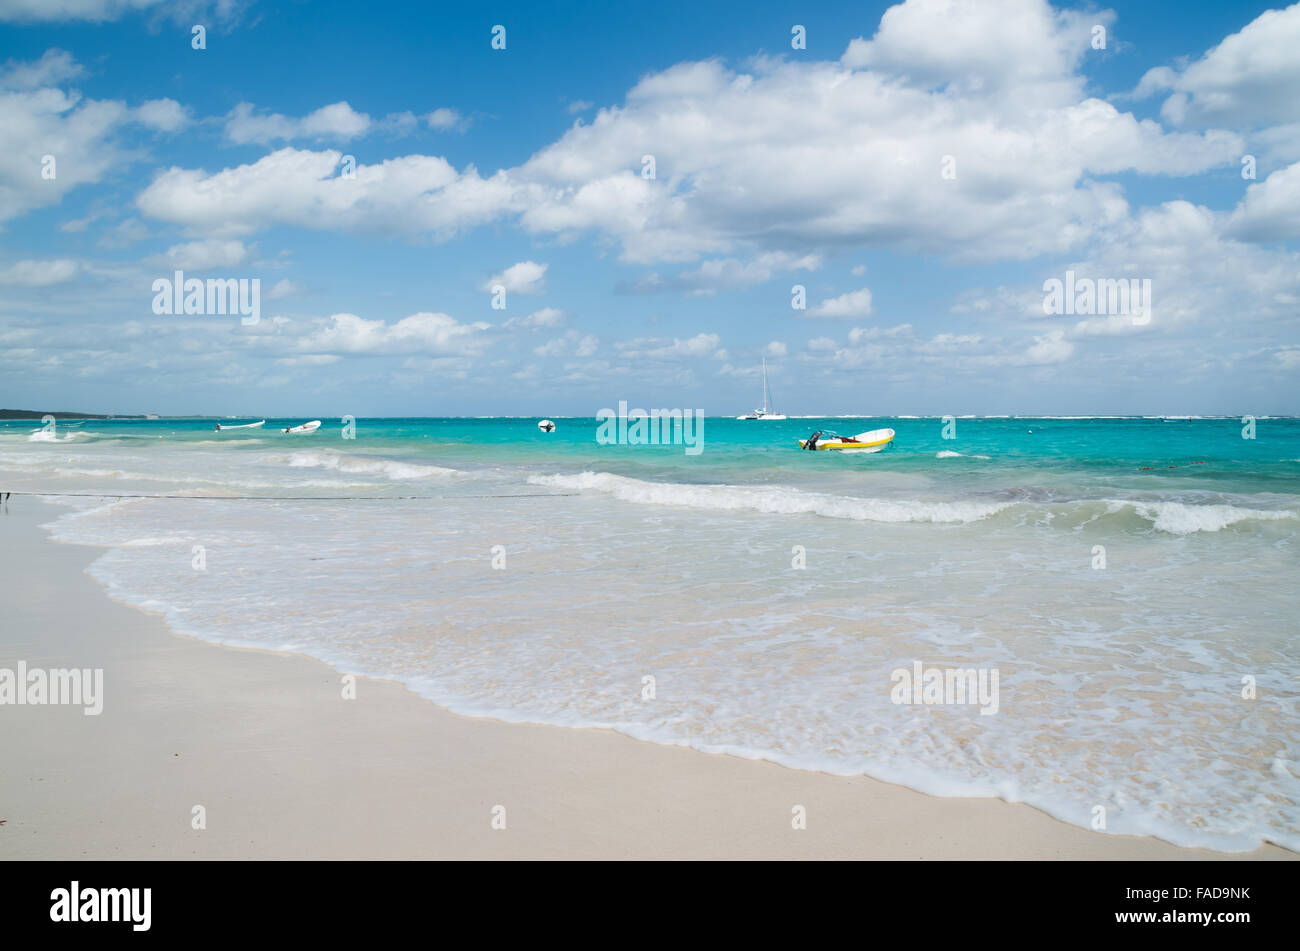 Playa Las Palmas beach près de Tulum dans la région de Riviera Maya au Mexique, un jour ensoleillé avant une tempête. Banque D'Images